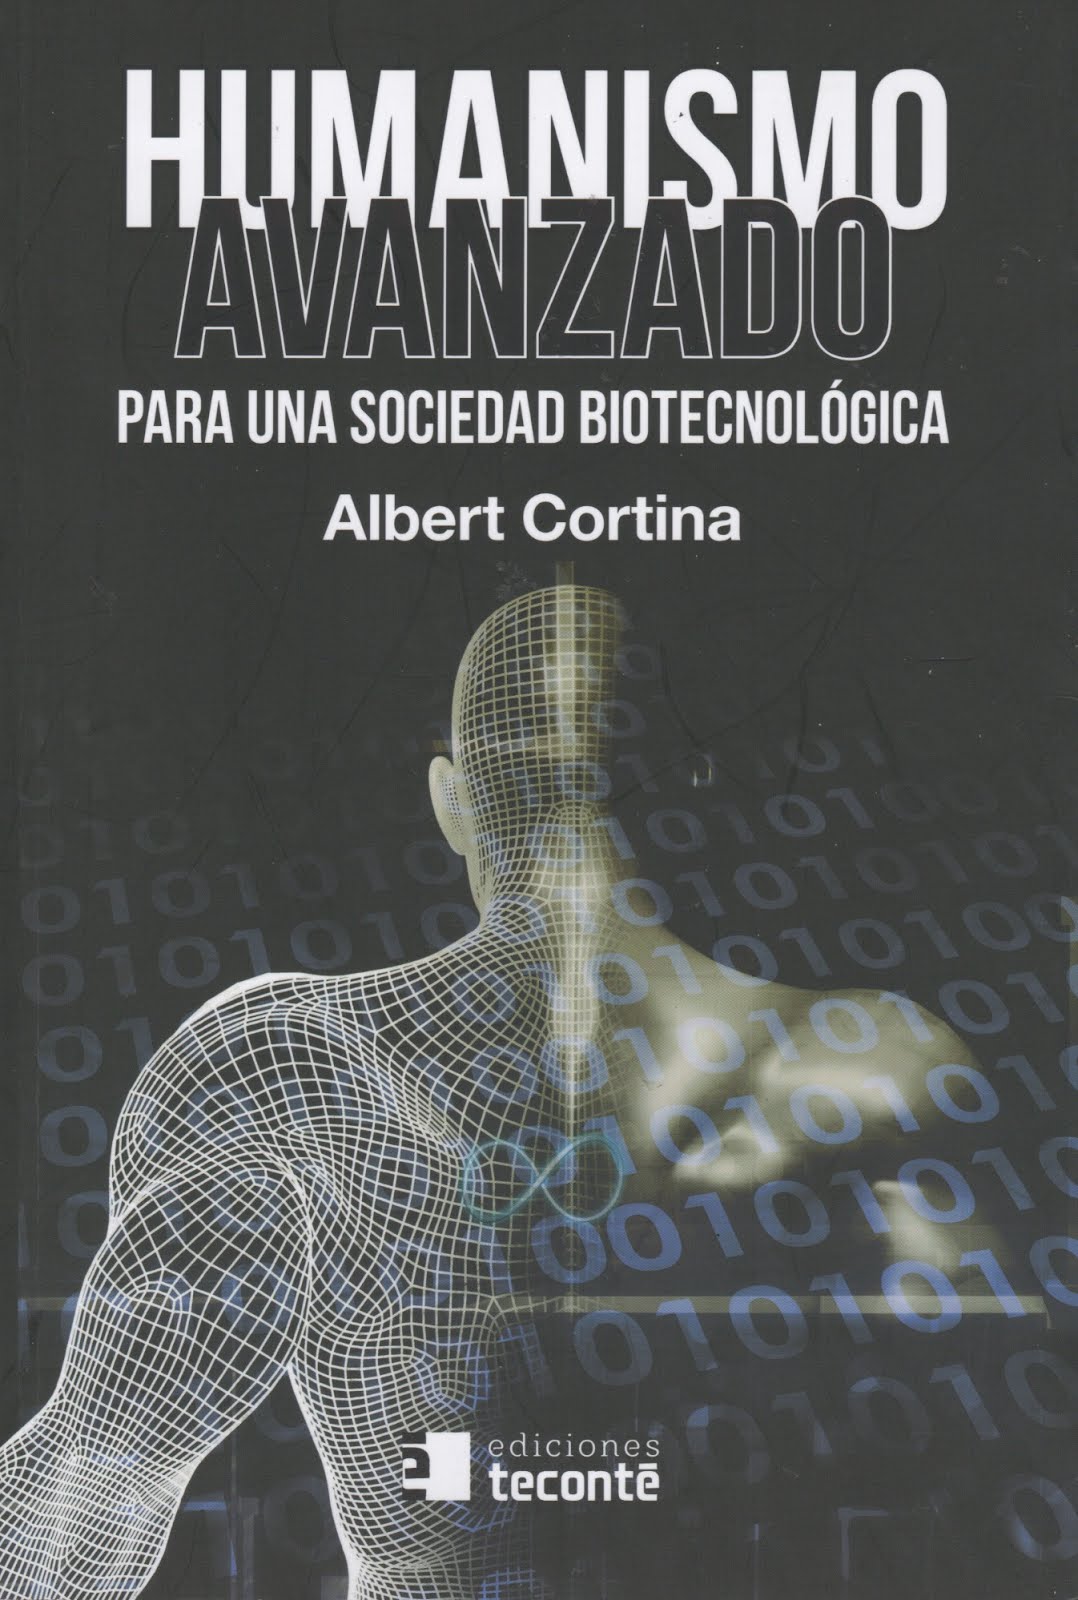 Albert Cortina (Humanismo avanzado) Para una sociedad biotecnológica